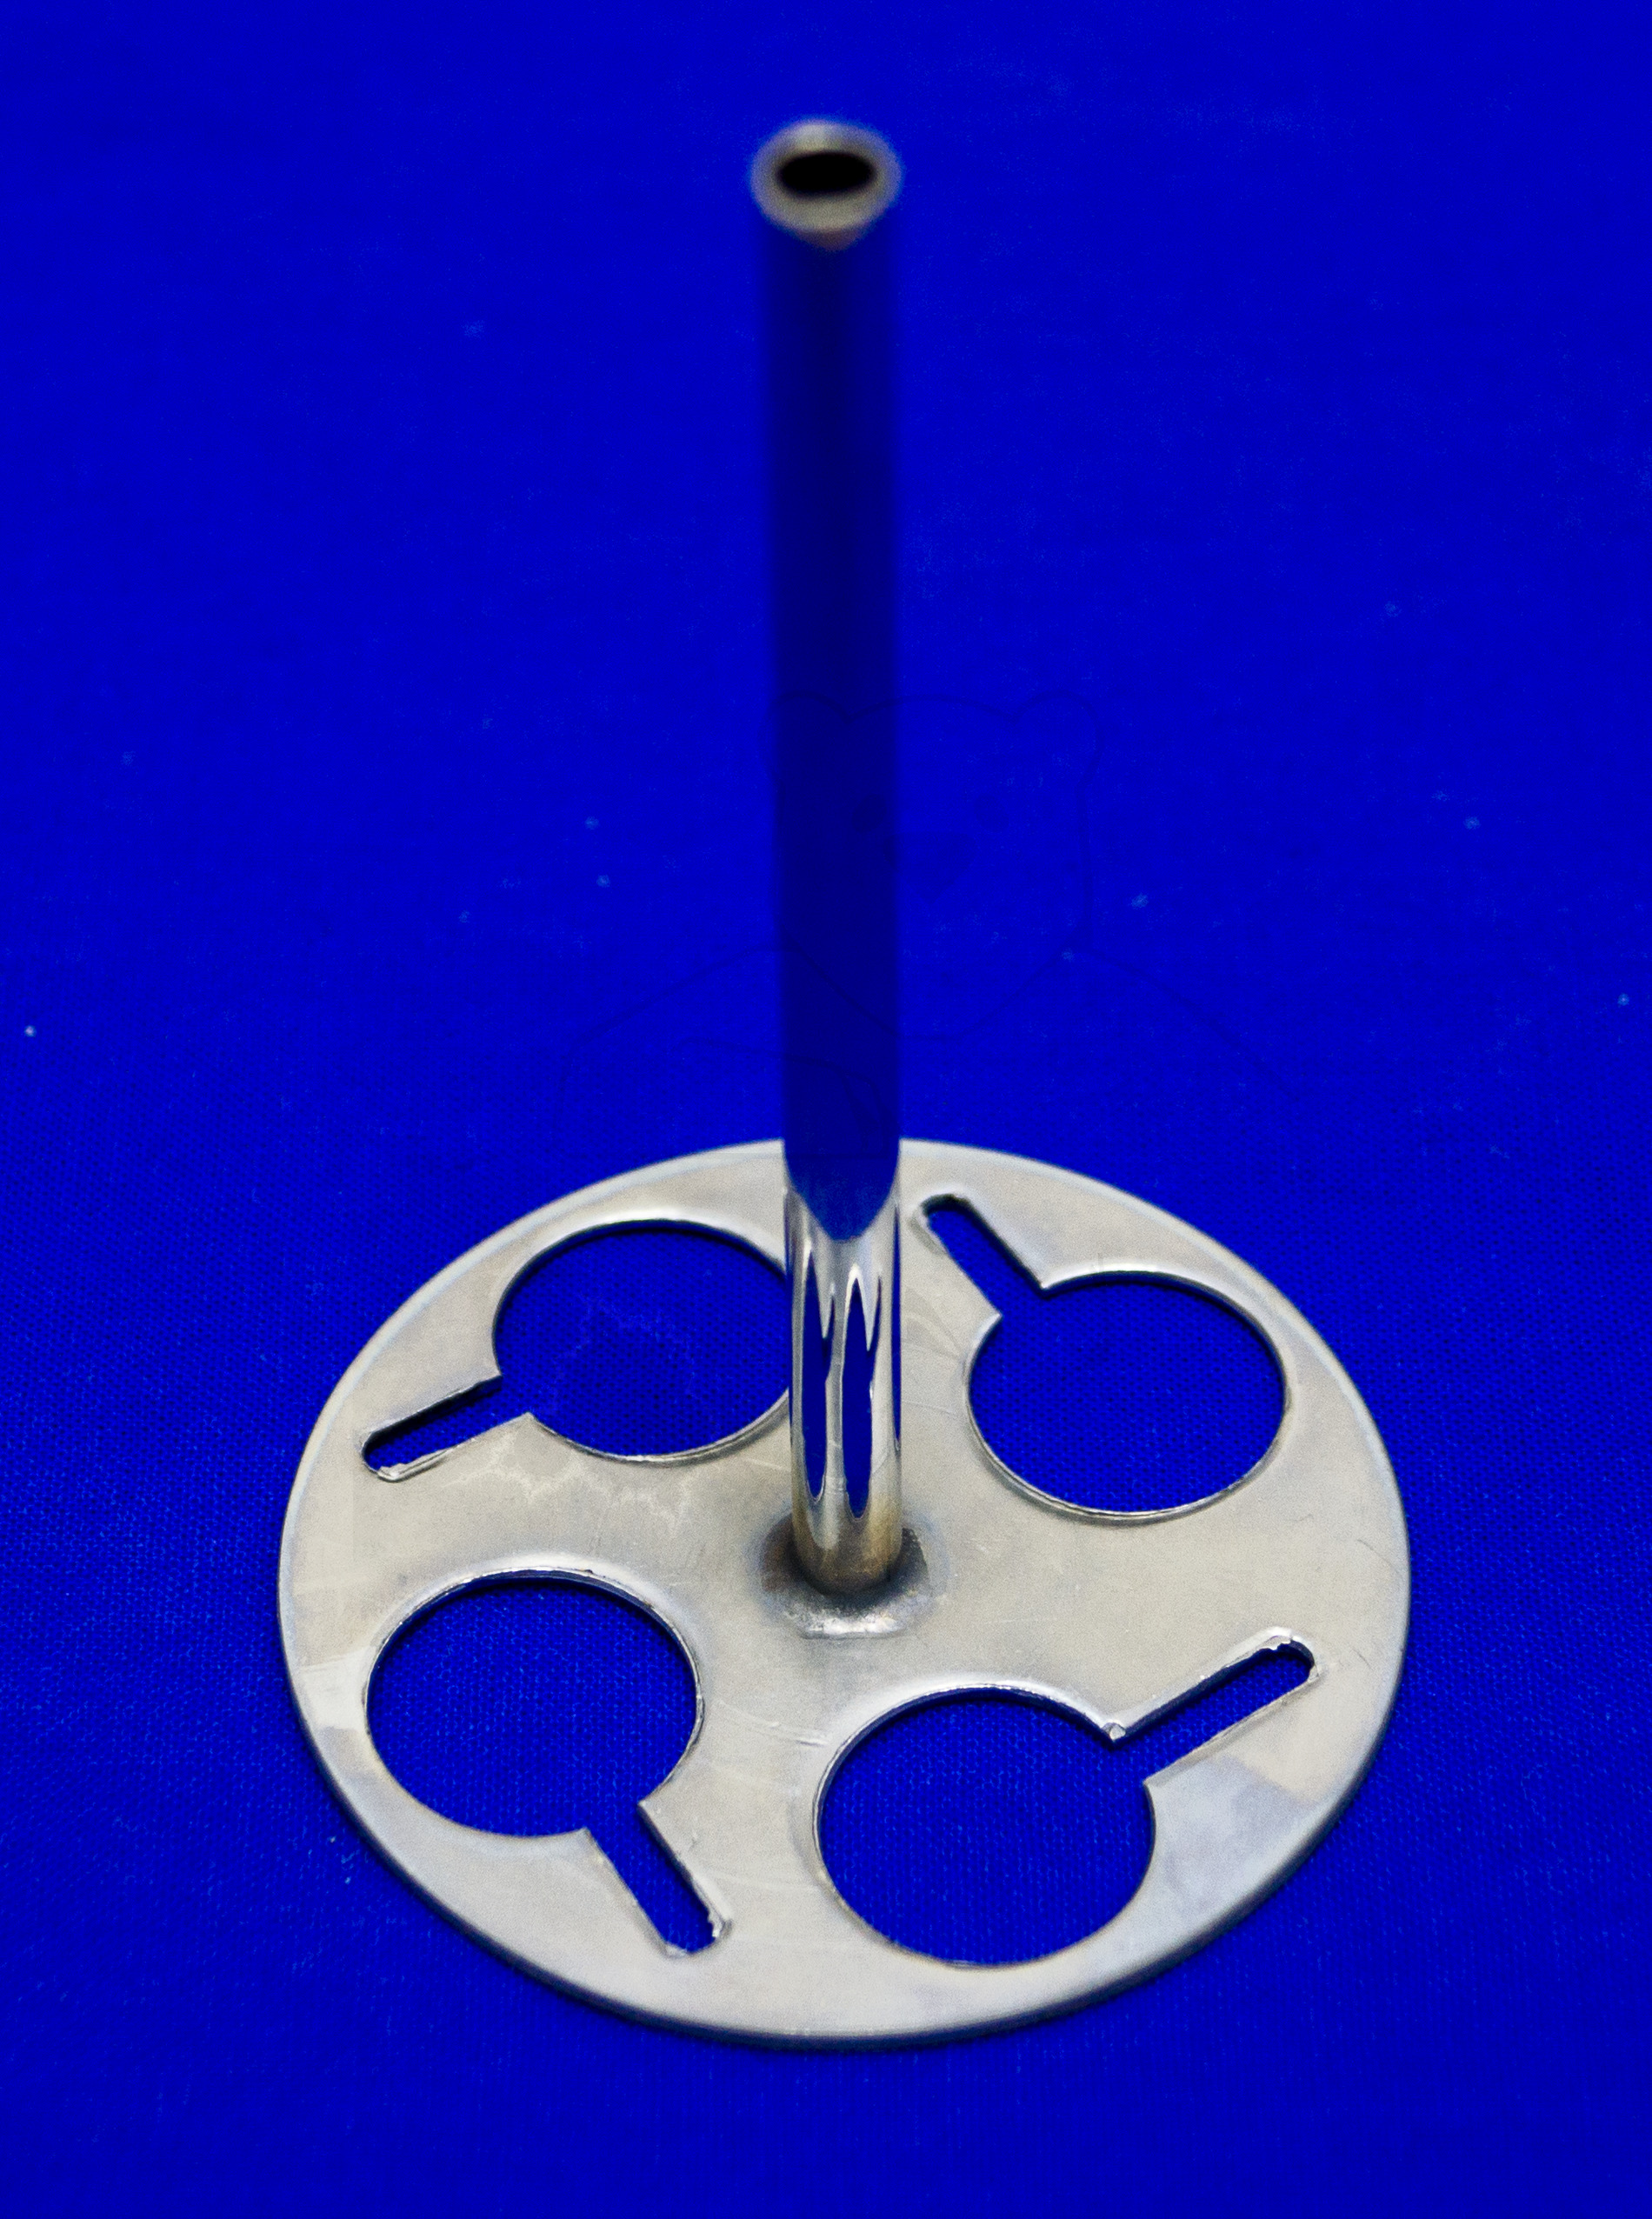 Glaszylinder zum Spritzen auskochen, Detailaufnahme Spritzenhalter